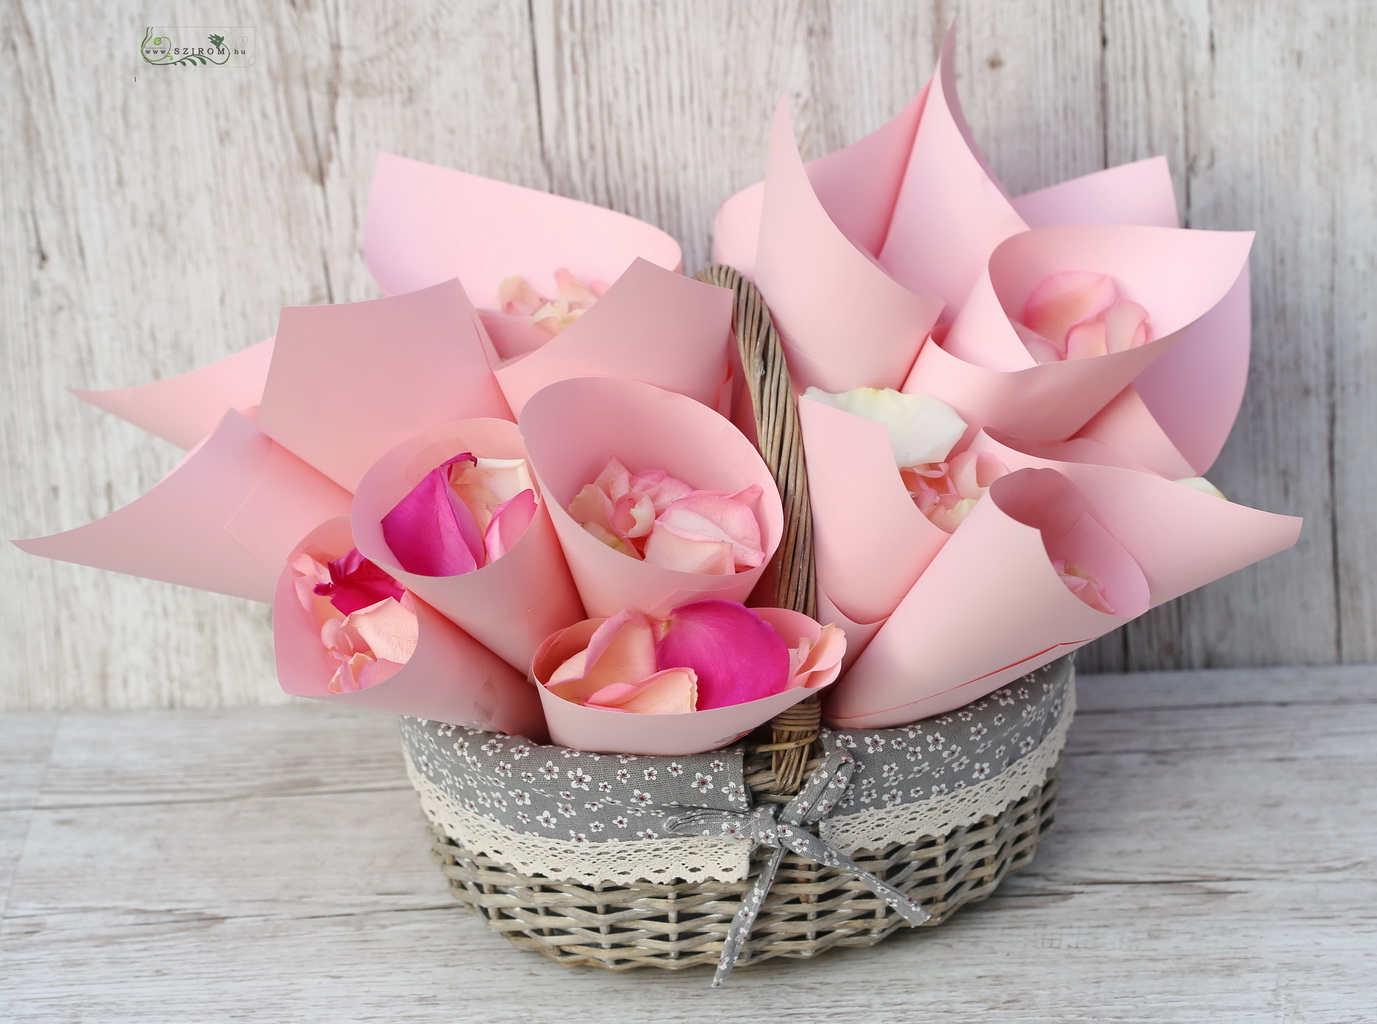 flower delivery Budapest - Petals paper funnels in basket (pink)